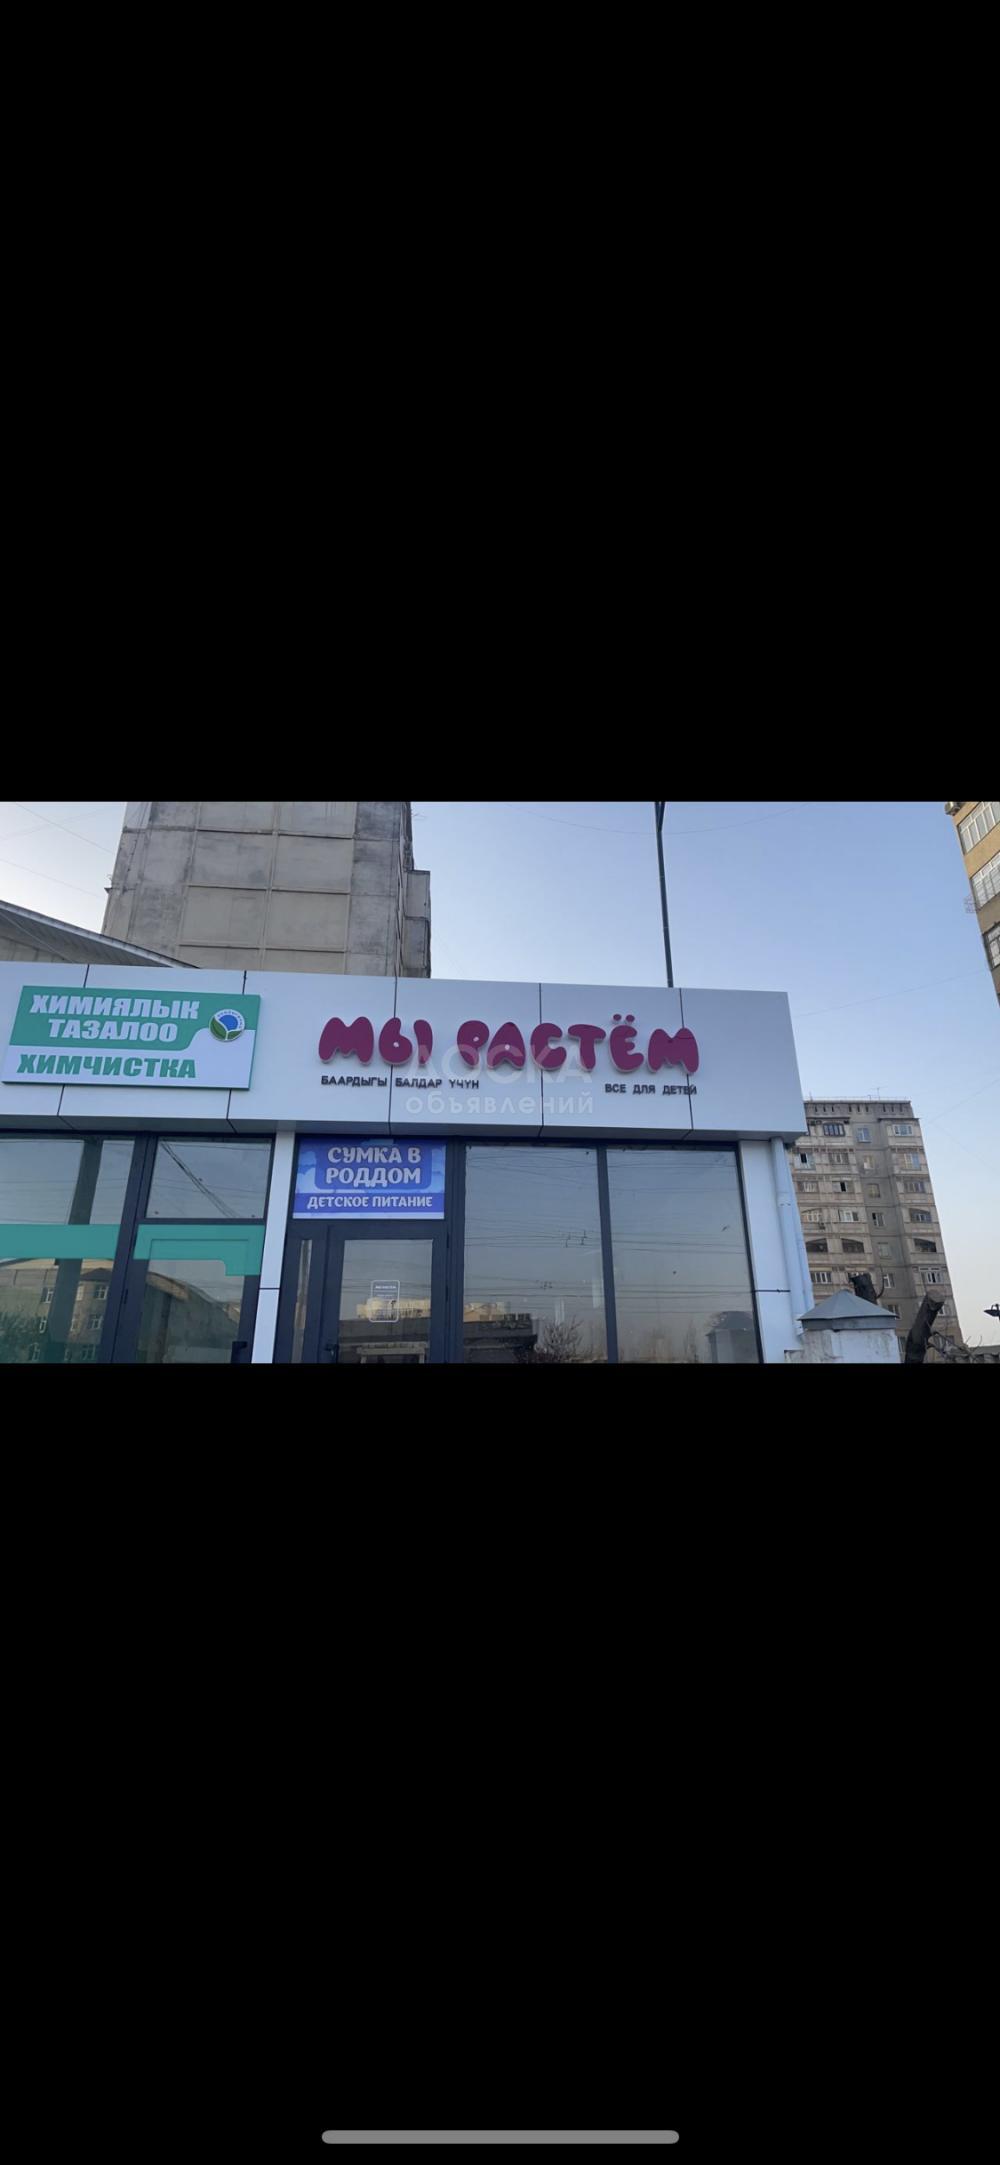 Продаю готовый бизнес в г Бишкек р-н Джал 
Место проходимое 
На аренде 
Выручка за день 50-80 тысяч сом